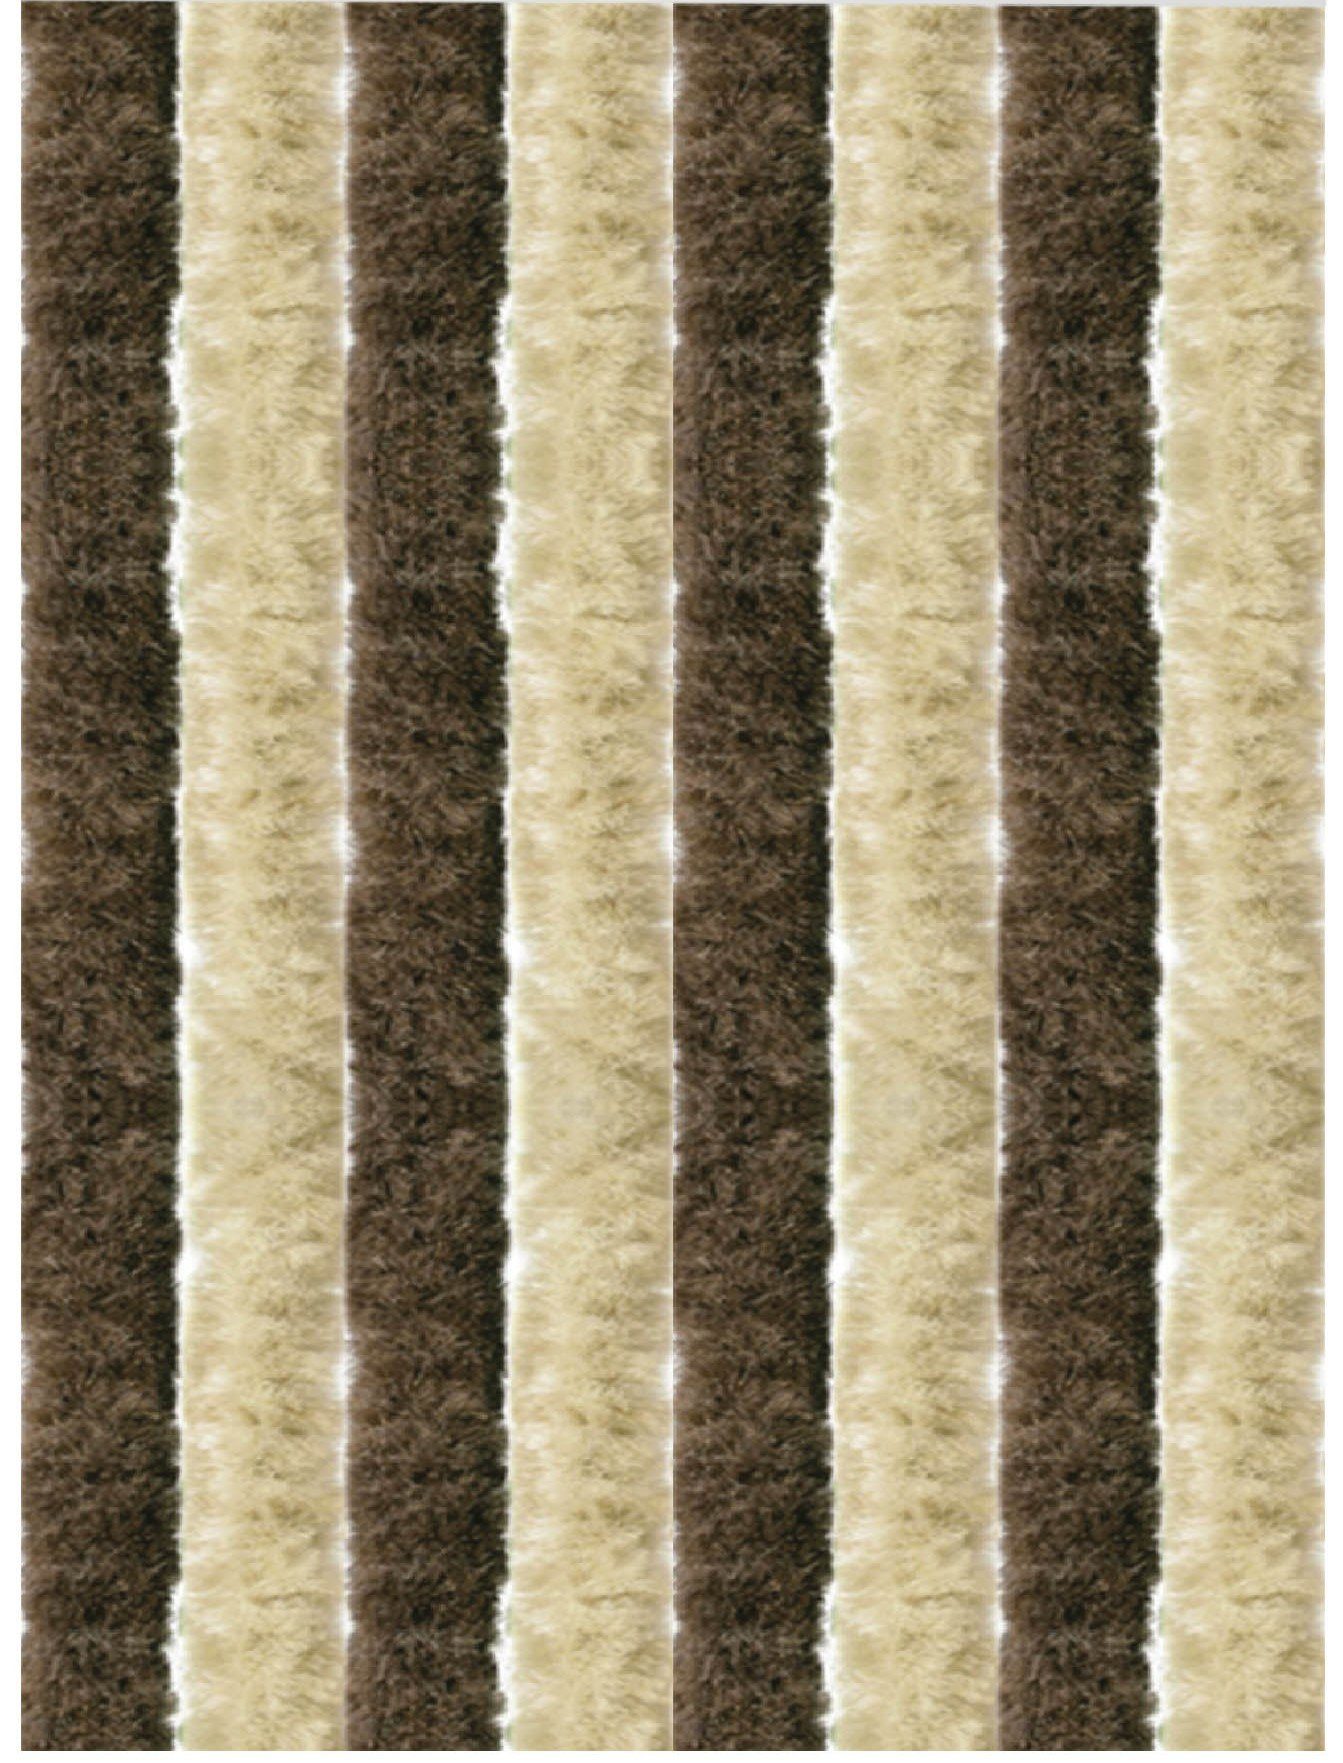 Türvorhang Flauschi, Arsvita, Ösen (1 St), Flauschvorhang 160x185 cm in Unistreifen beige - braun, viele Farben